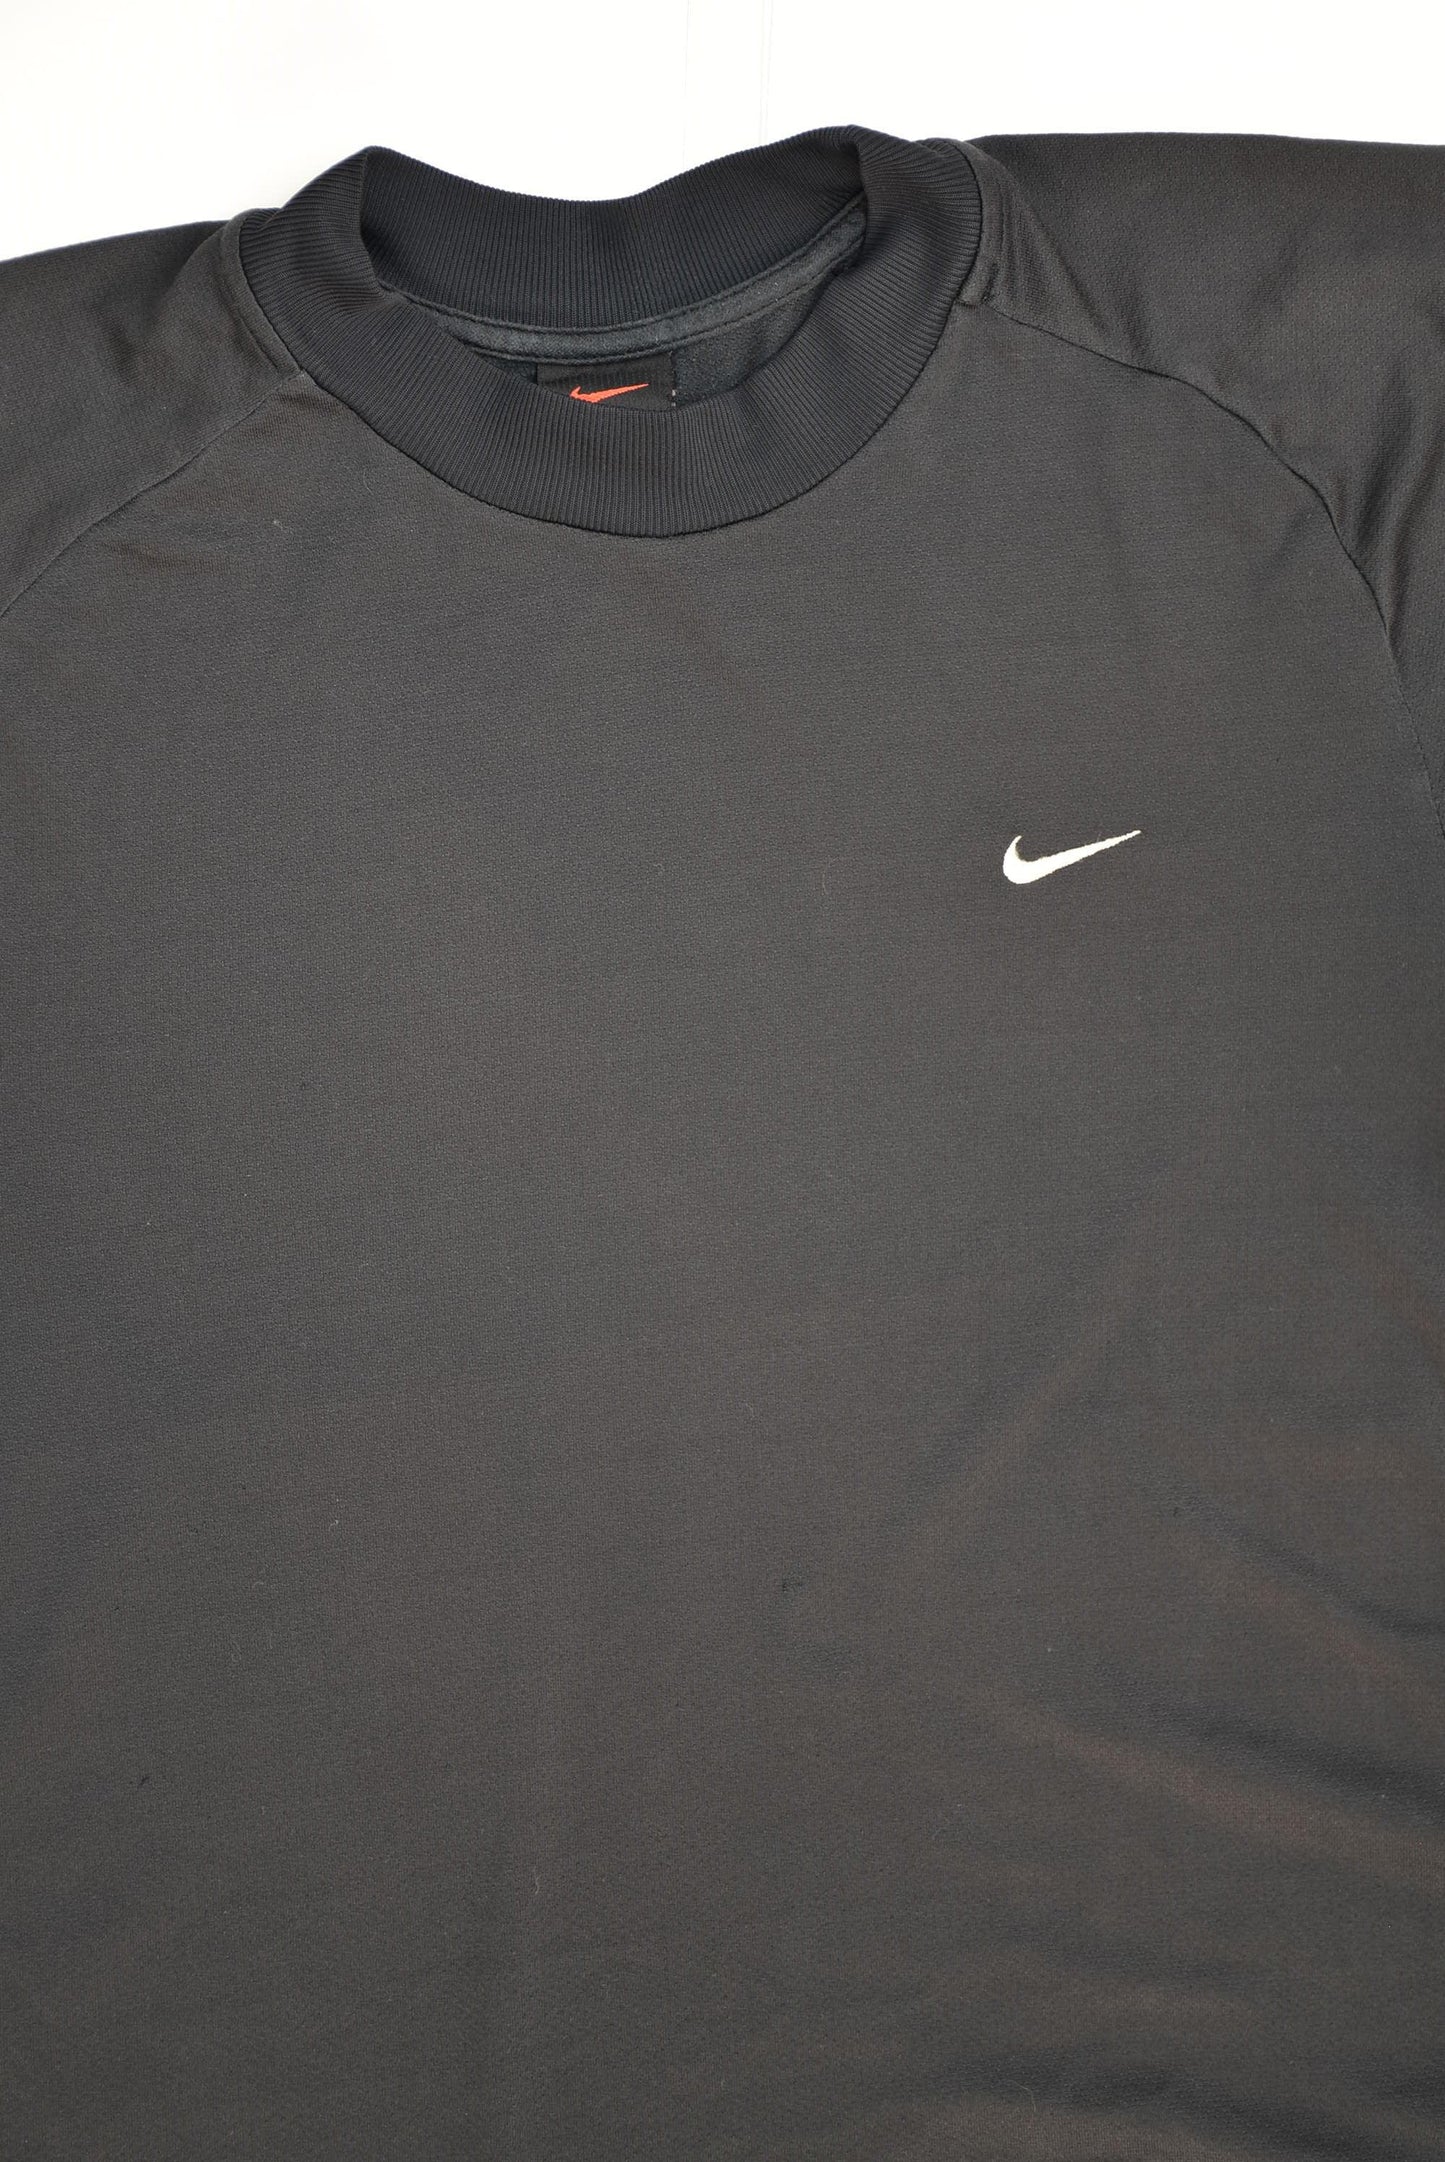 90s Nike T-shirt (S/XS)